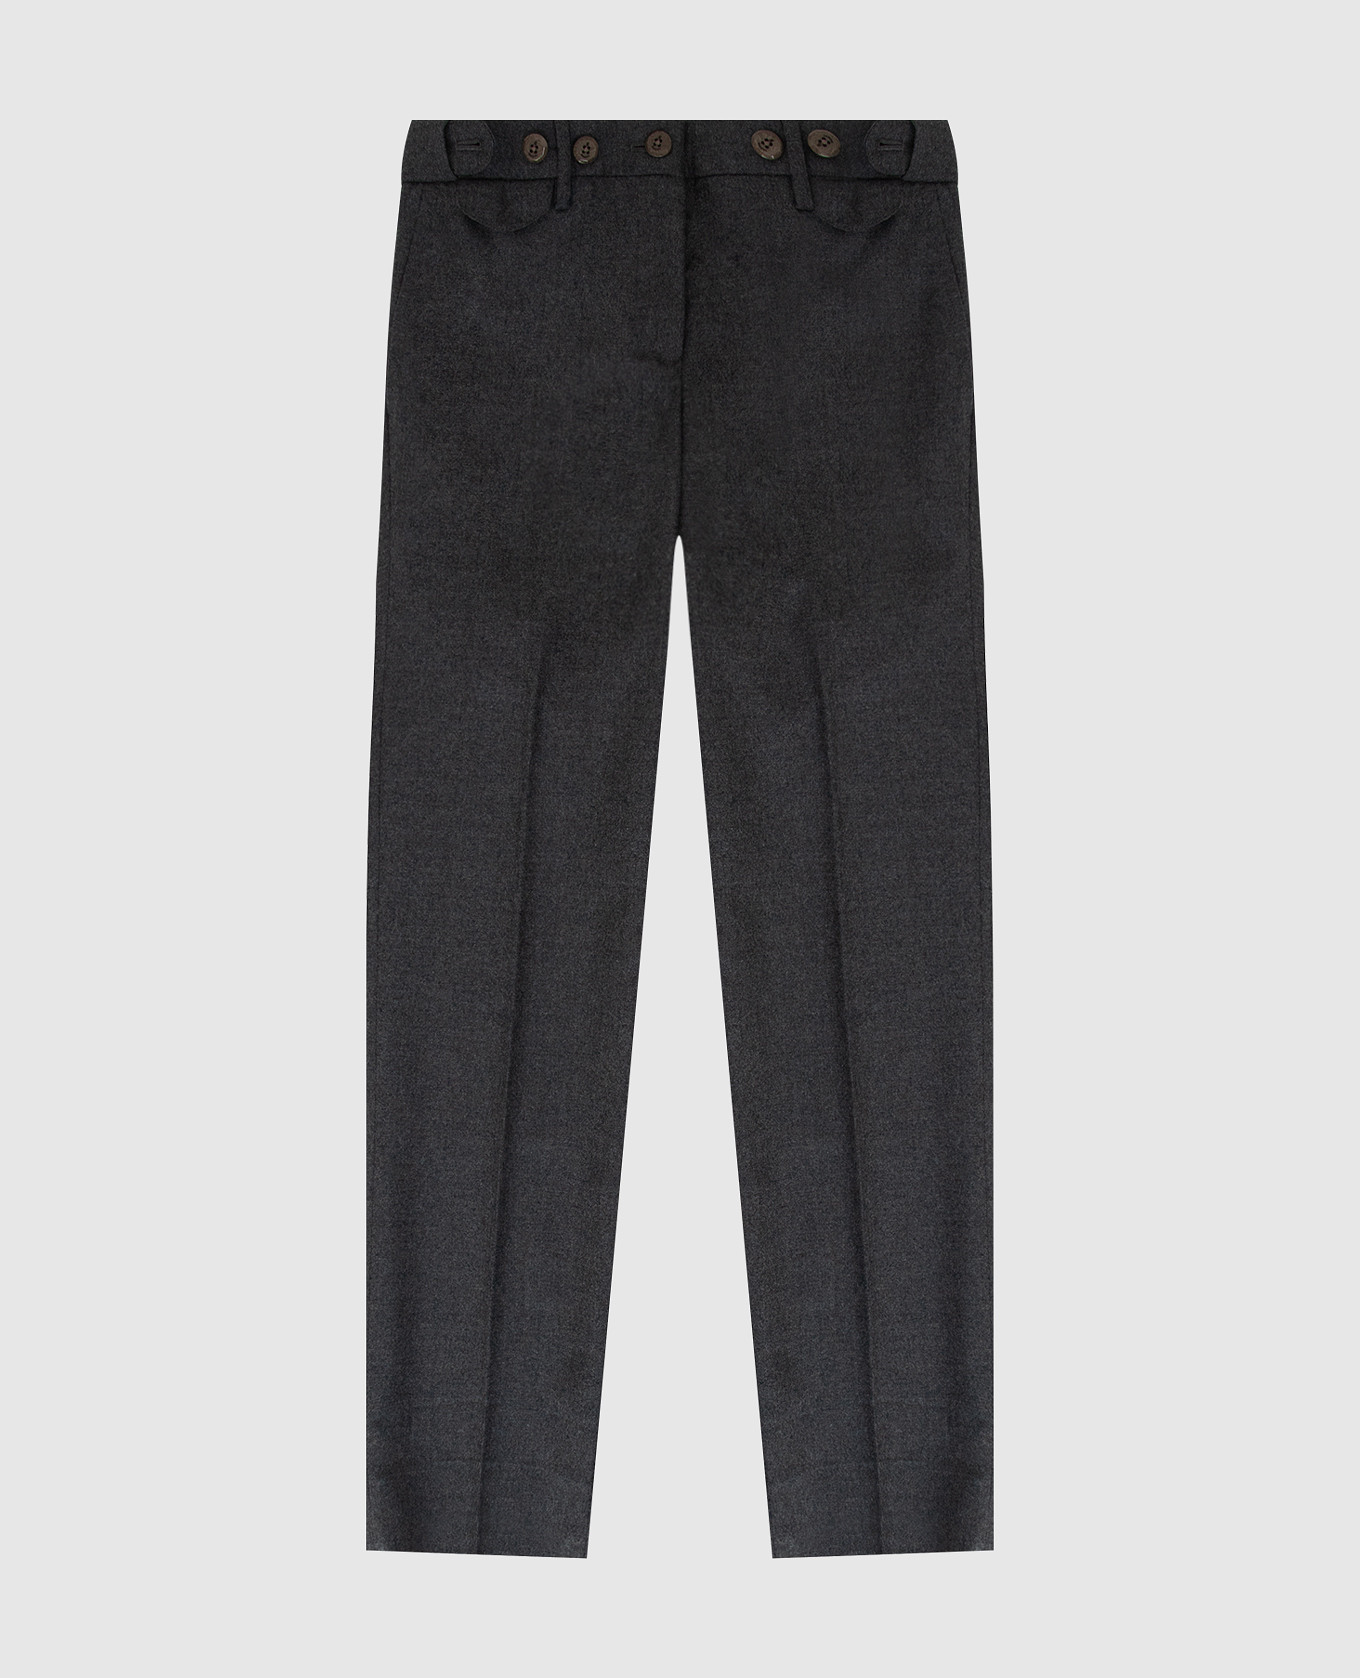 Children's dark gray wool trousers